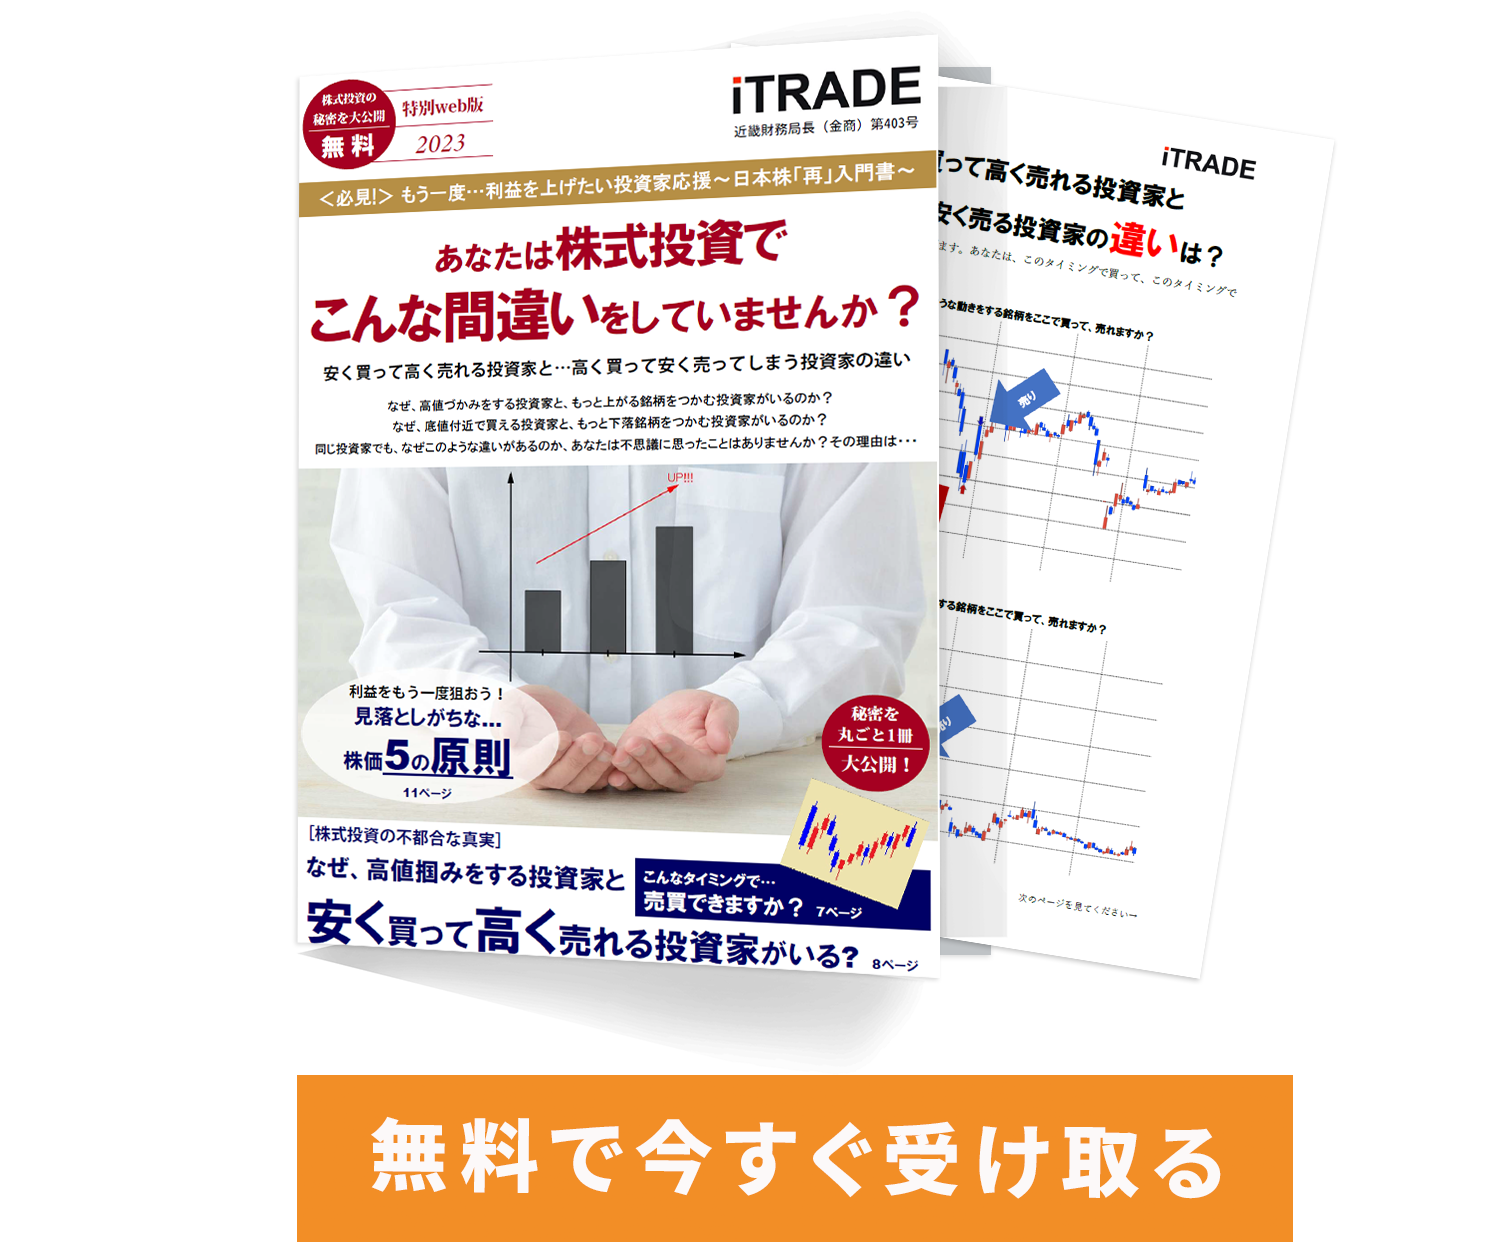 【無料】今回のデータ分析がもっと詳しく分かるeBook（電子書籍）『日本株再入門』無料プレゼント中。今すぐこちらをクリックしてください。</strong></a><br /> 